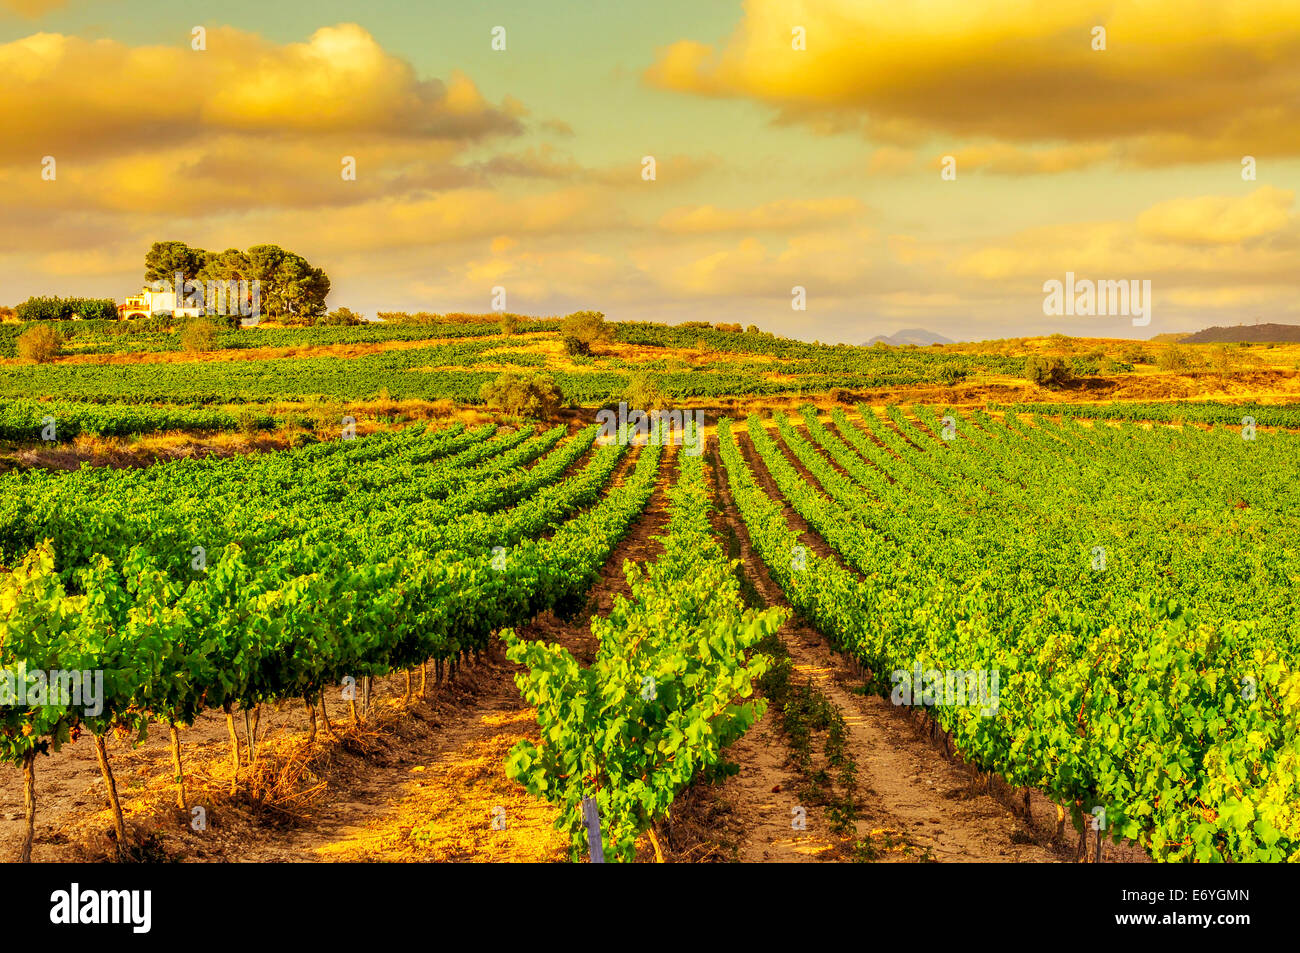 Vista de un viñedo con uvas maduras en un país mediterráneo al atardecer Foto de stock